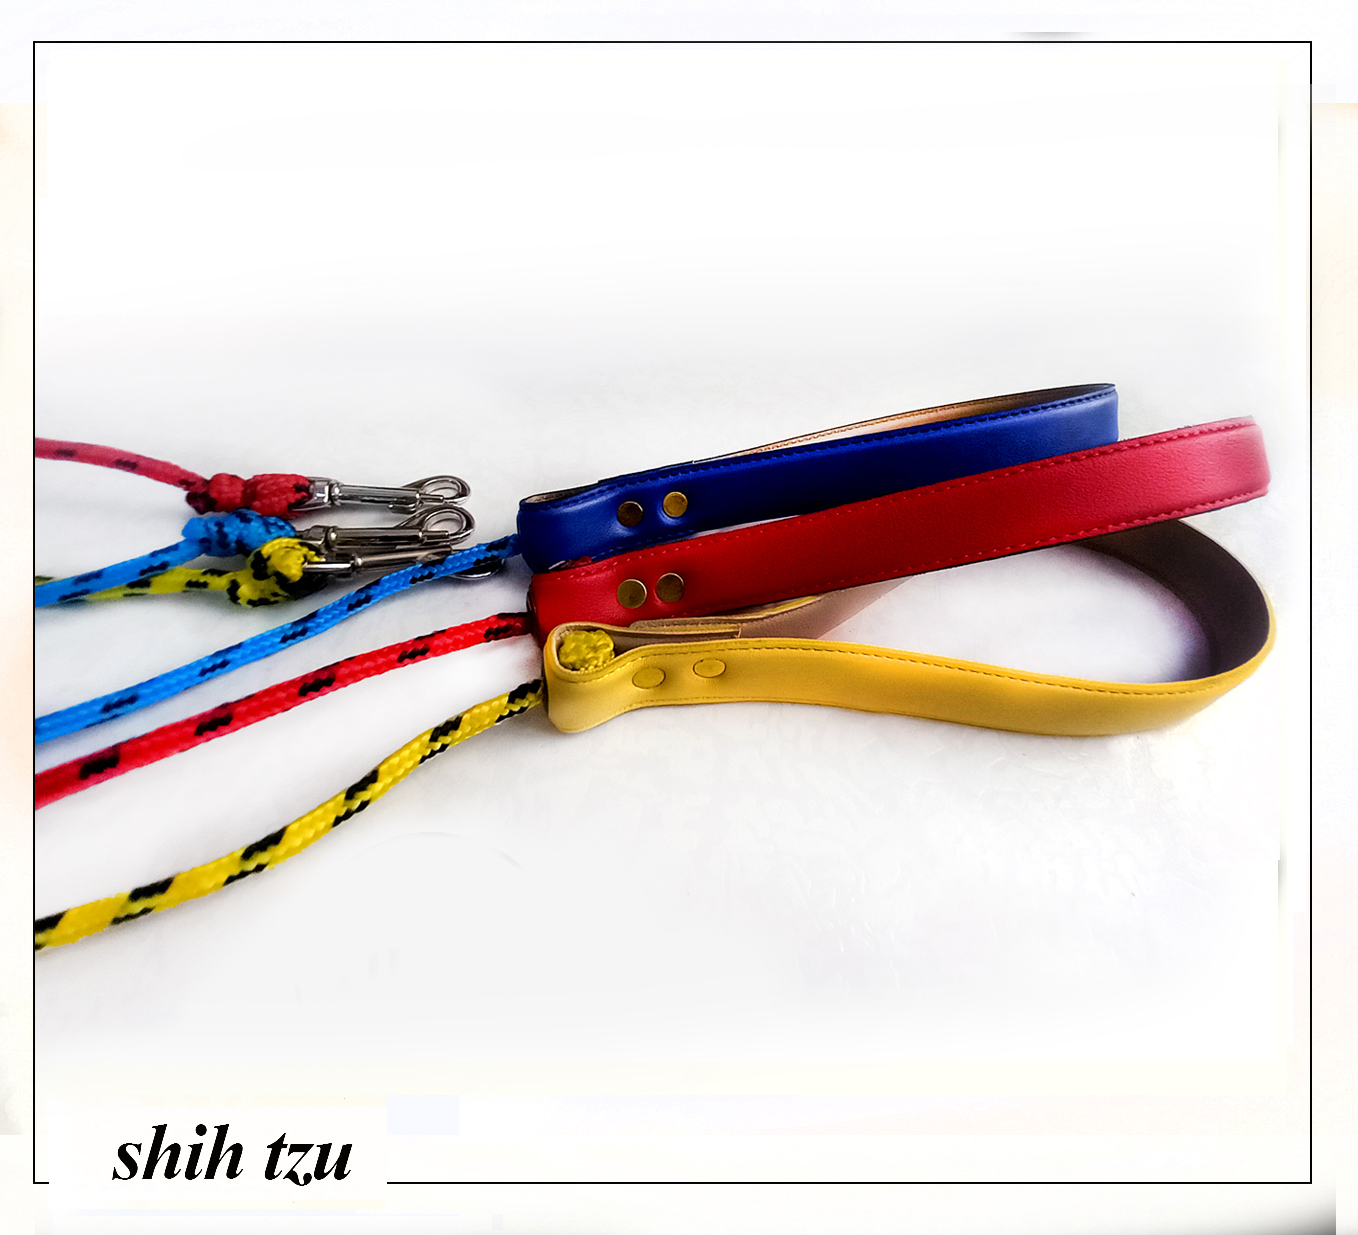 تهیه شده از چرم مصنوعی و طناب پاراکورد در رنگ ها ی شاد و زیبا مناسب سگ های بازیگوش